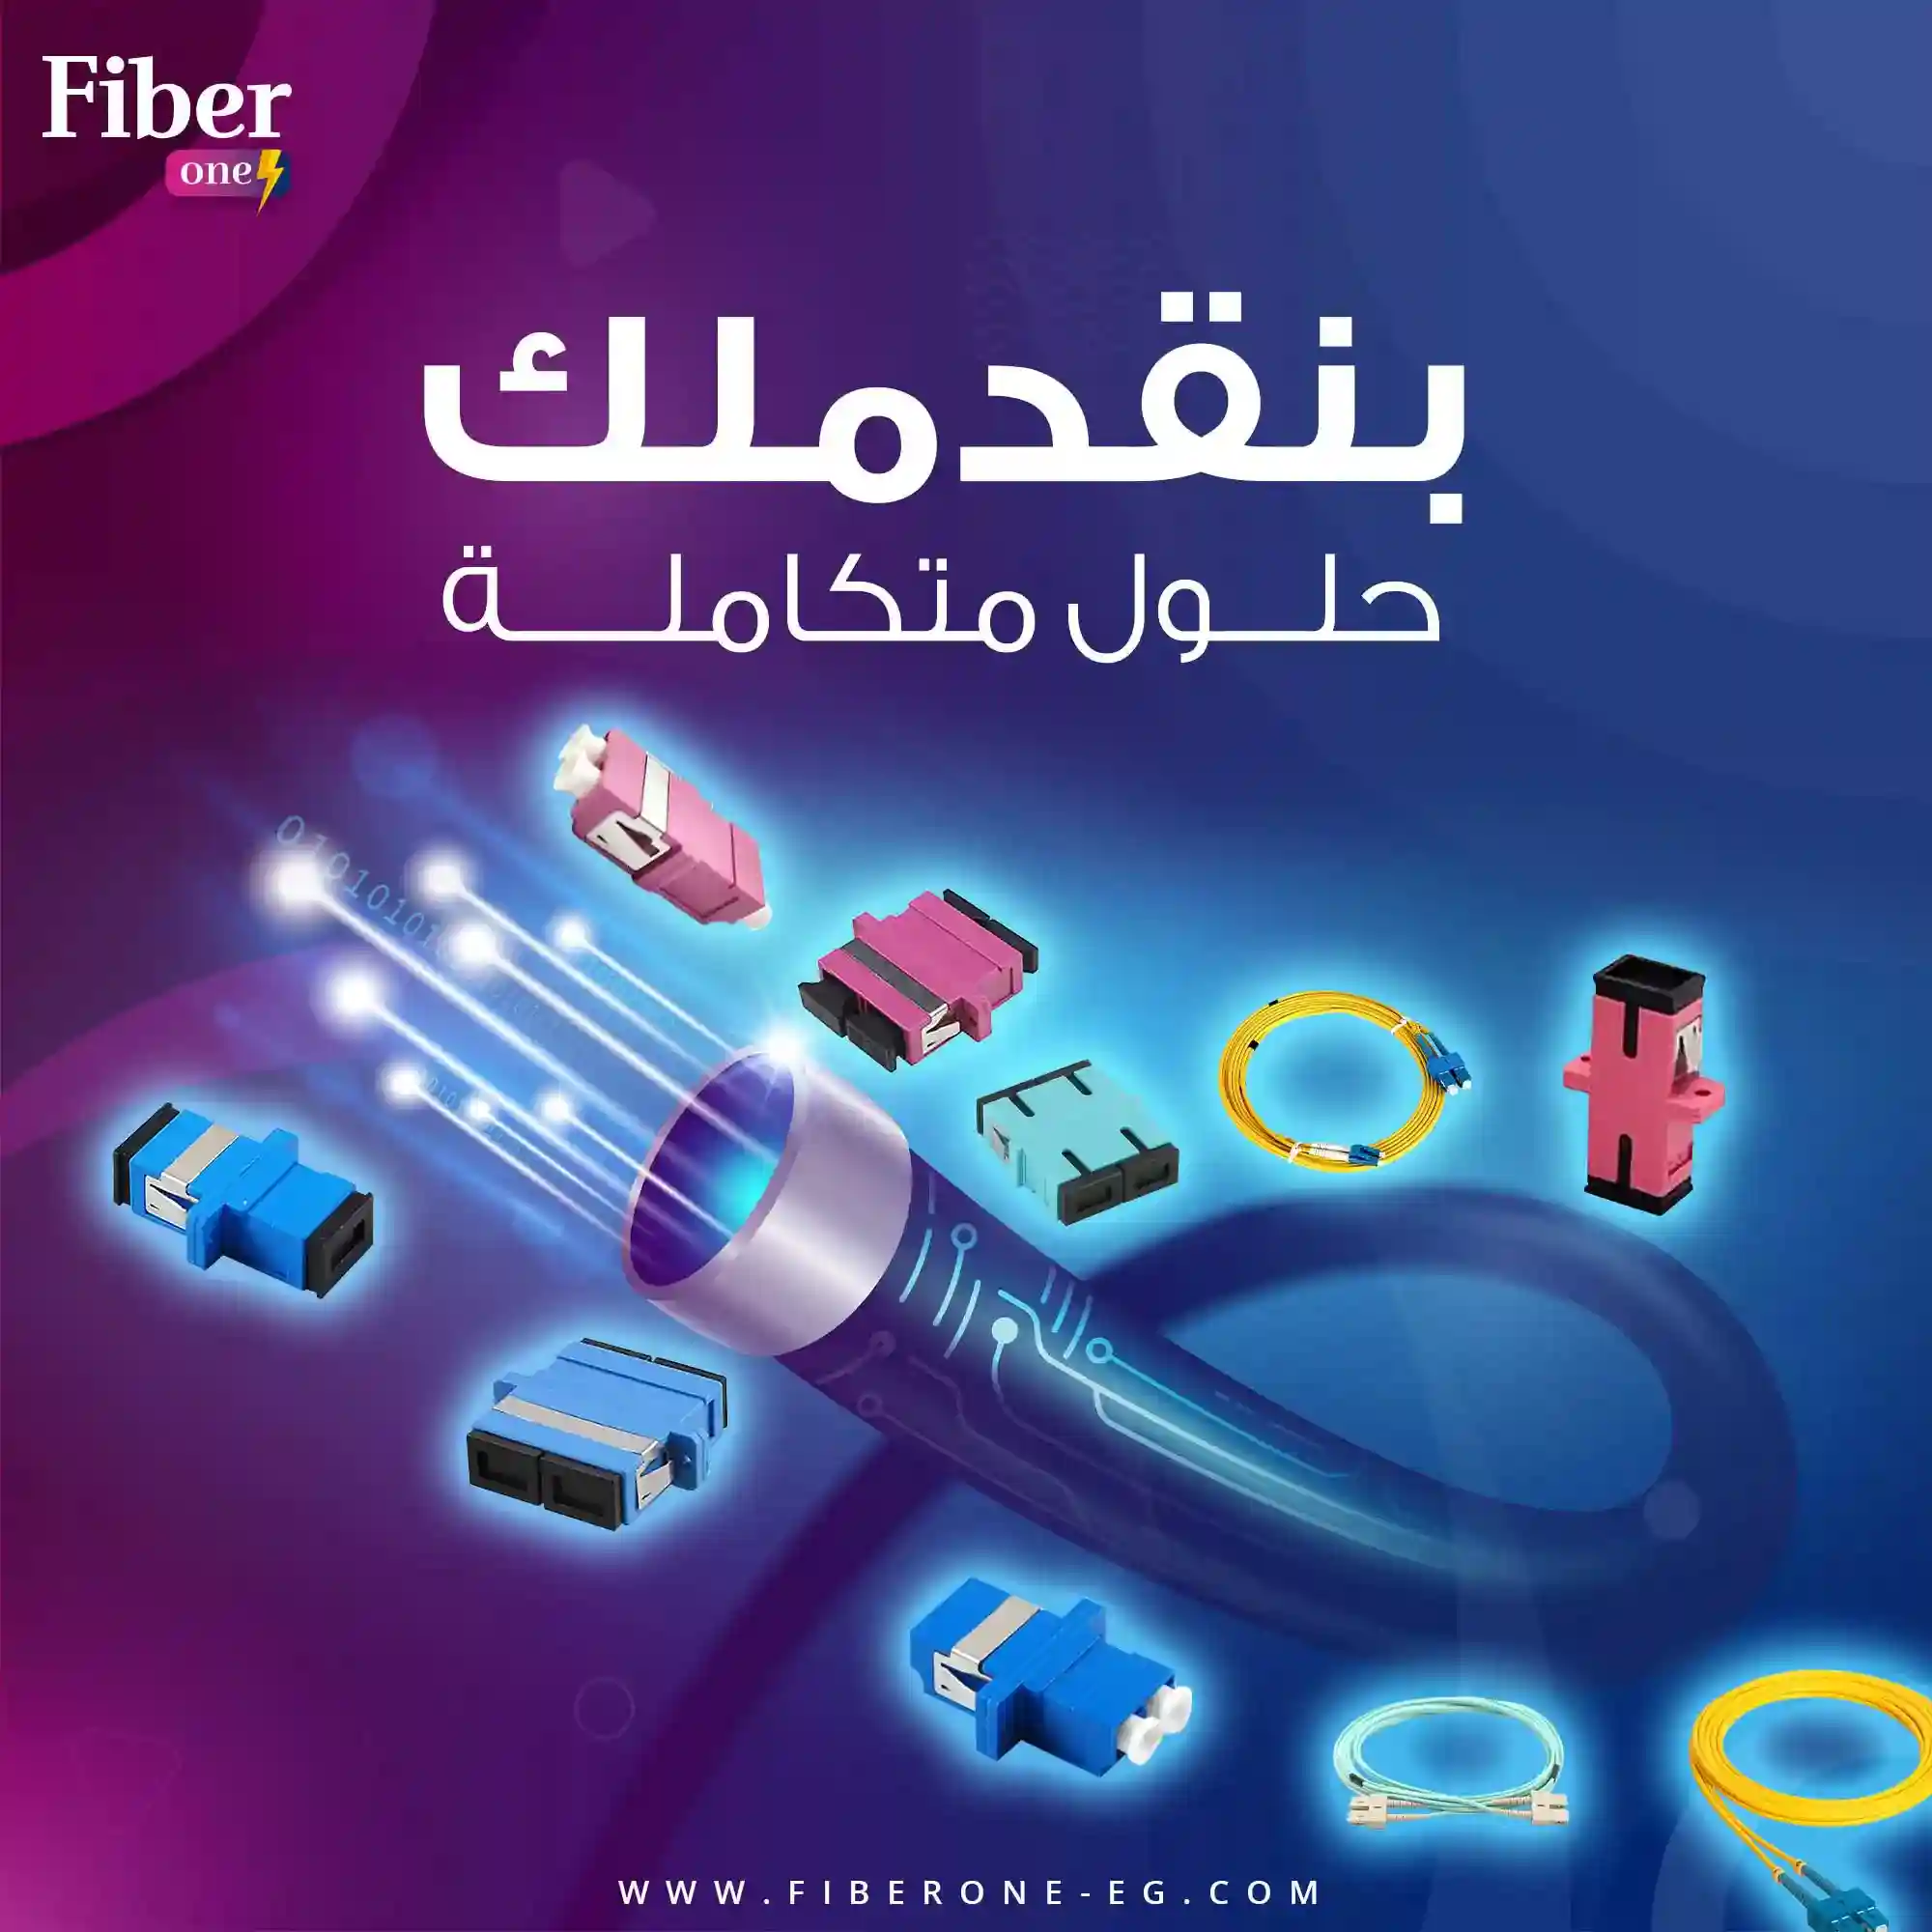 fiber one social media 1